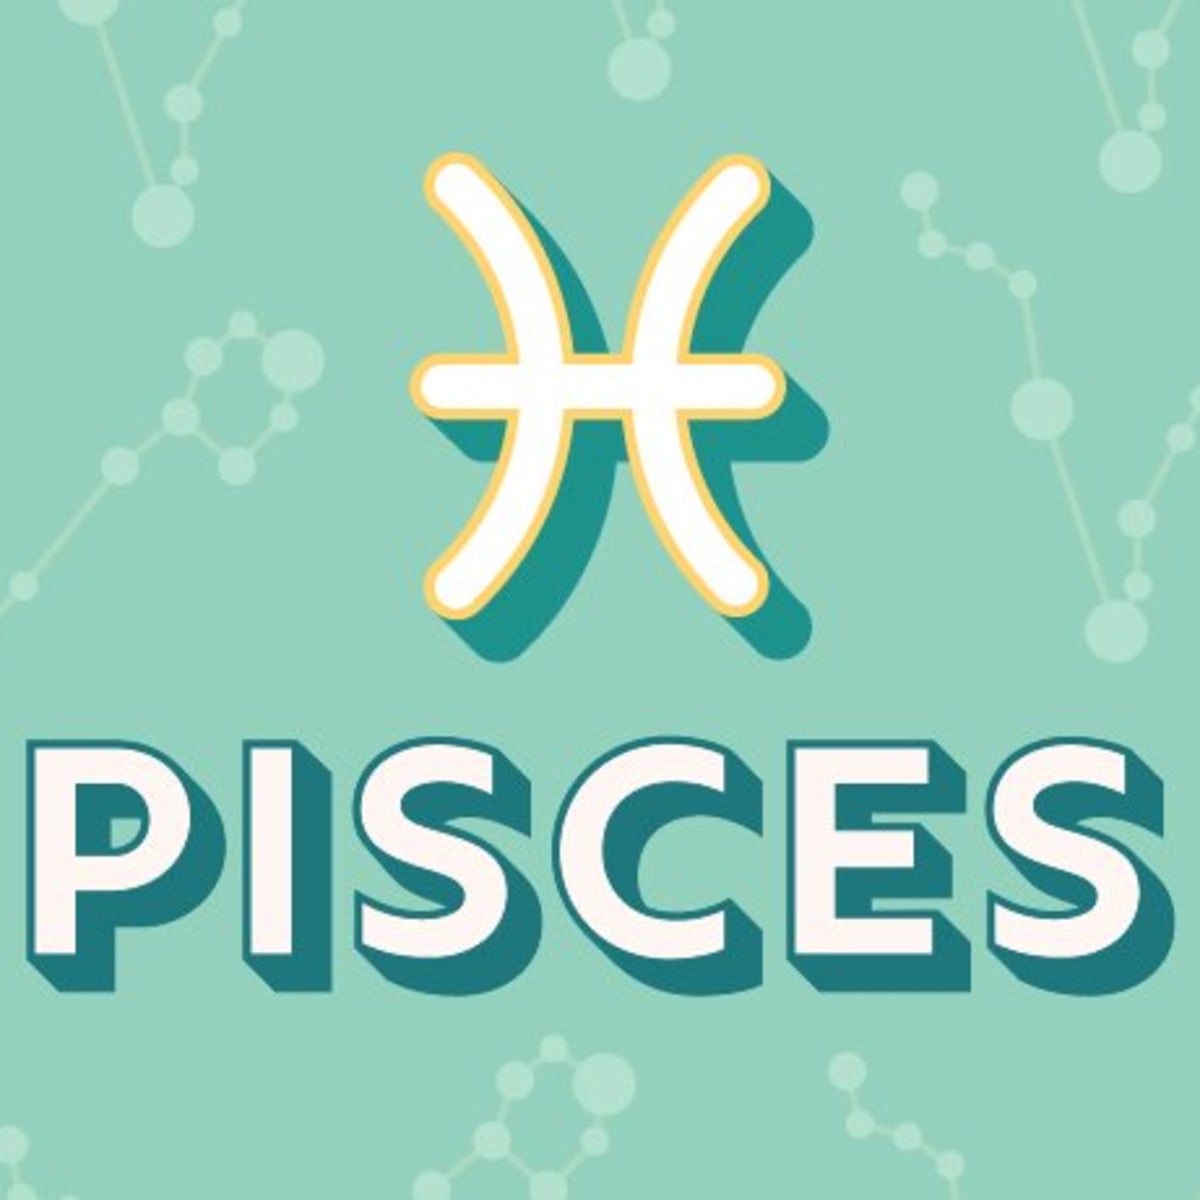 1 Pisces